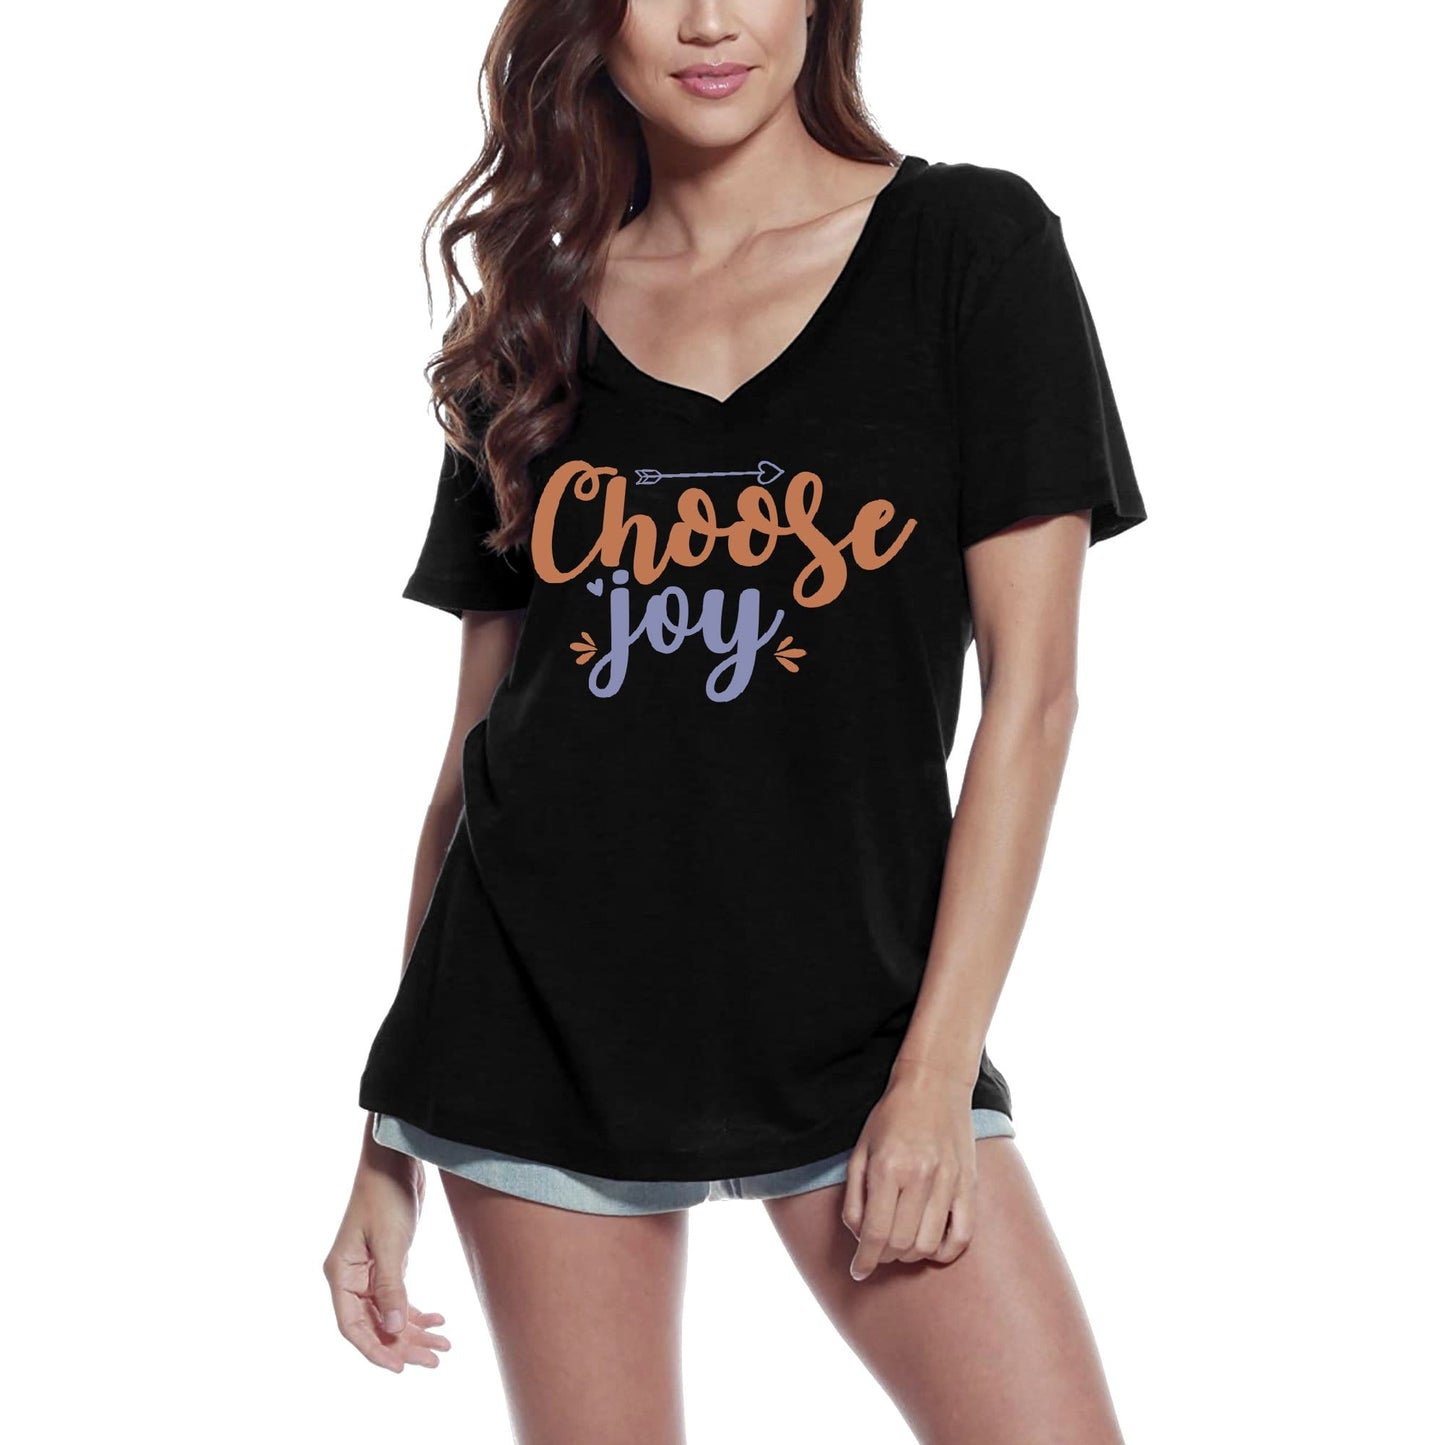 ULTRABASIC Women's V-Neck T-Shirt Choose Joy - Short Sleeve Tee Shirt Gift Tops